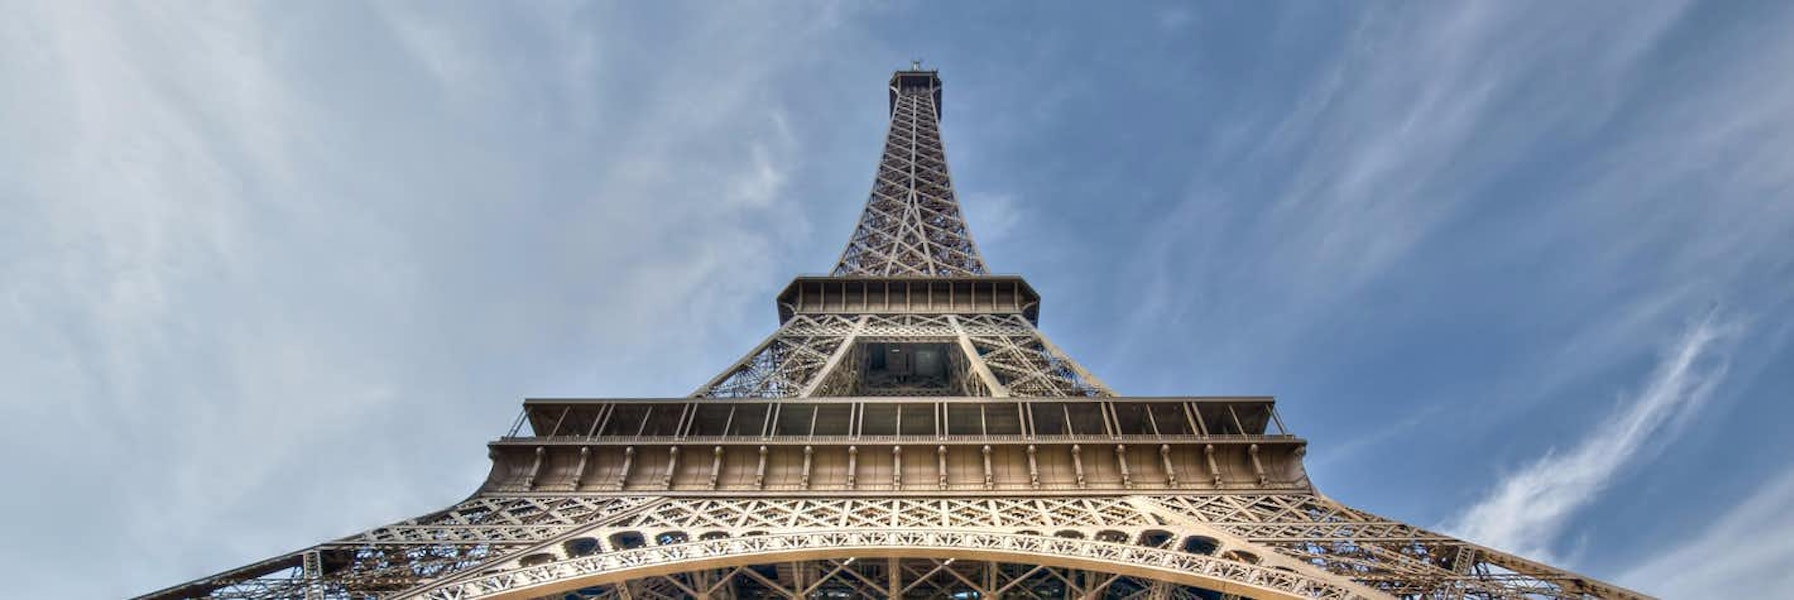 Eiffelturm Ebenen